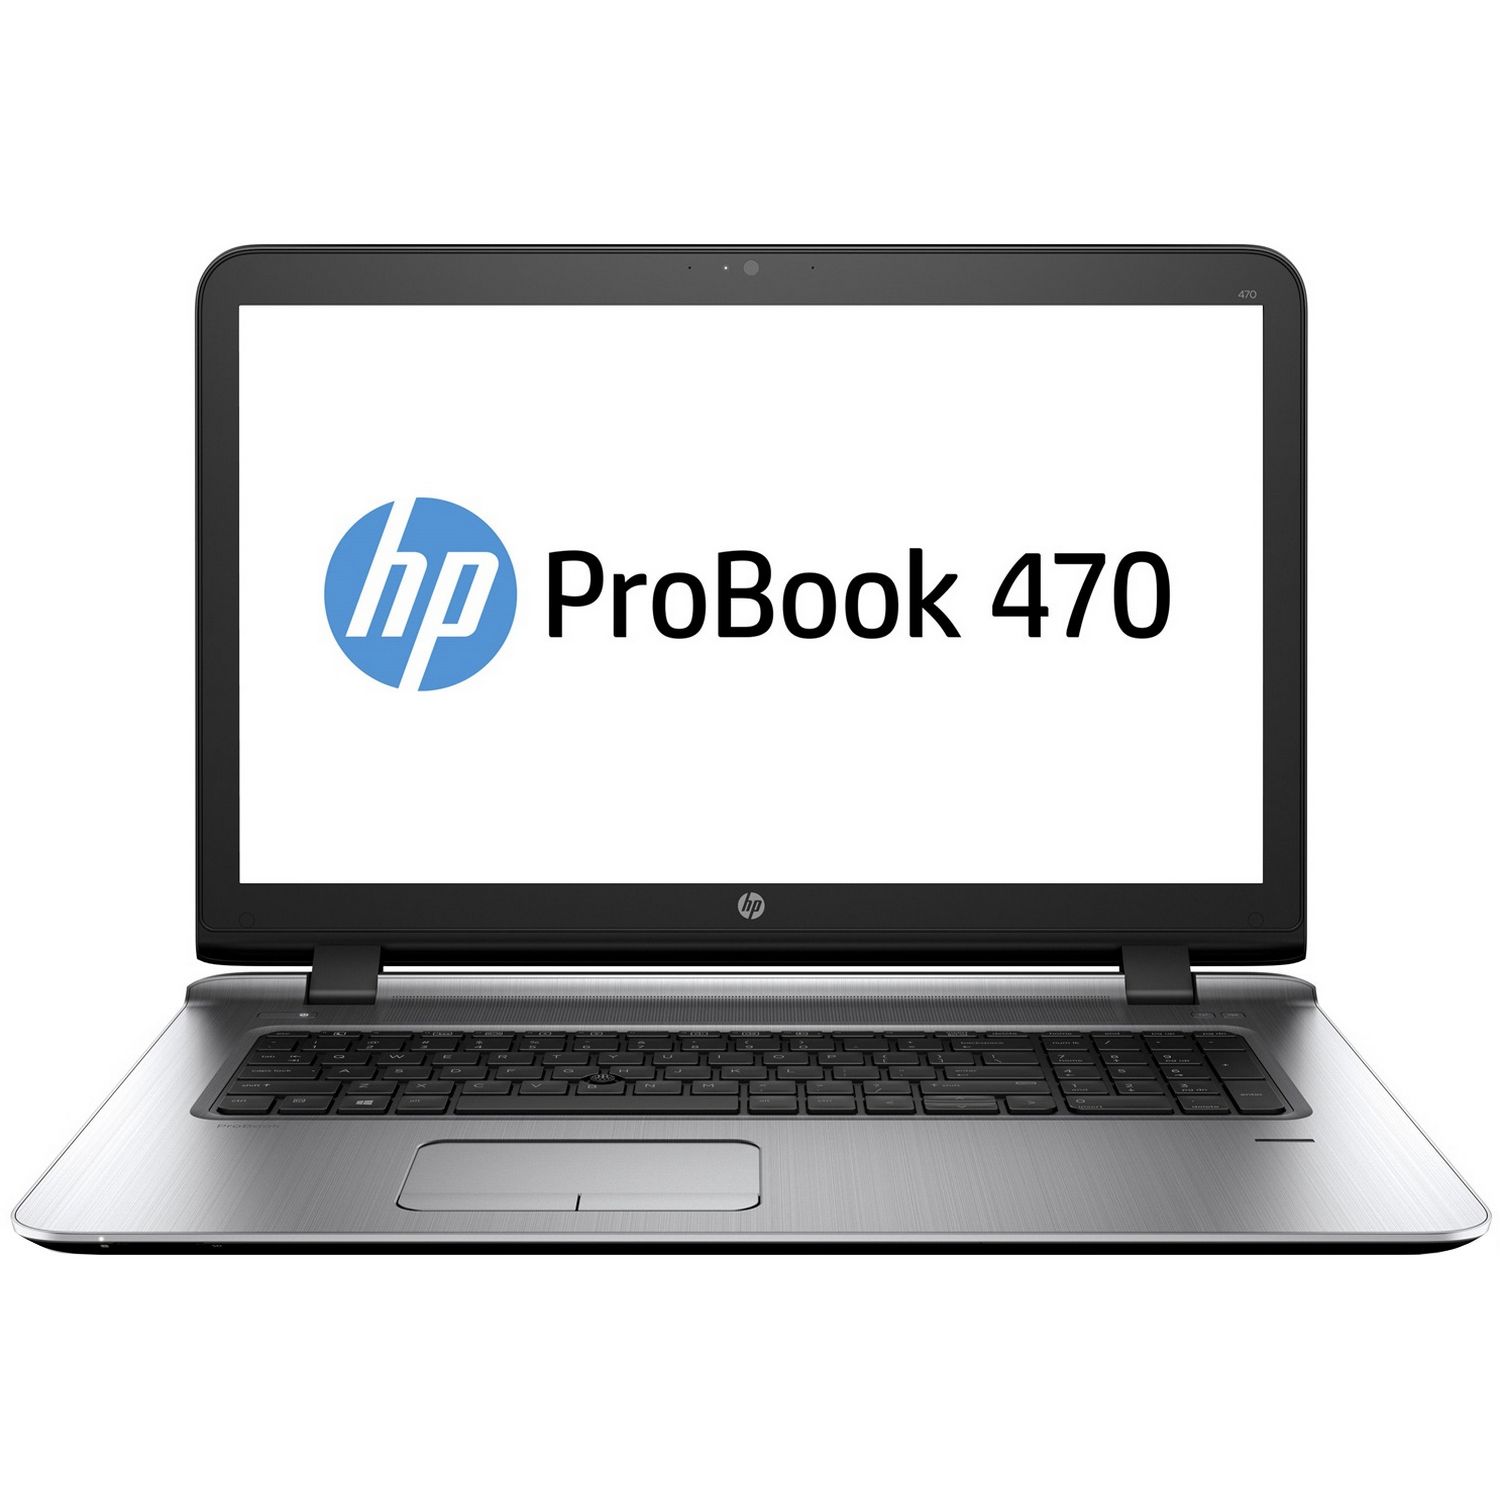 Laptop HP ProBook 470 G3, Intel Core i3-6100U, 4GB DDR4, HDD 500GB, AMD Radeon R7 M340 1GB, Free DOS